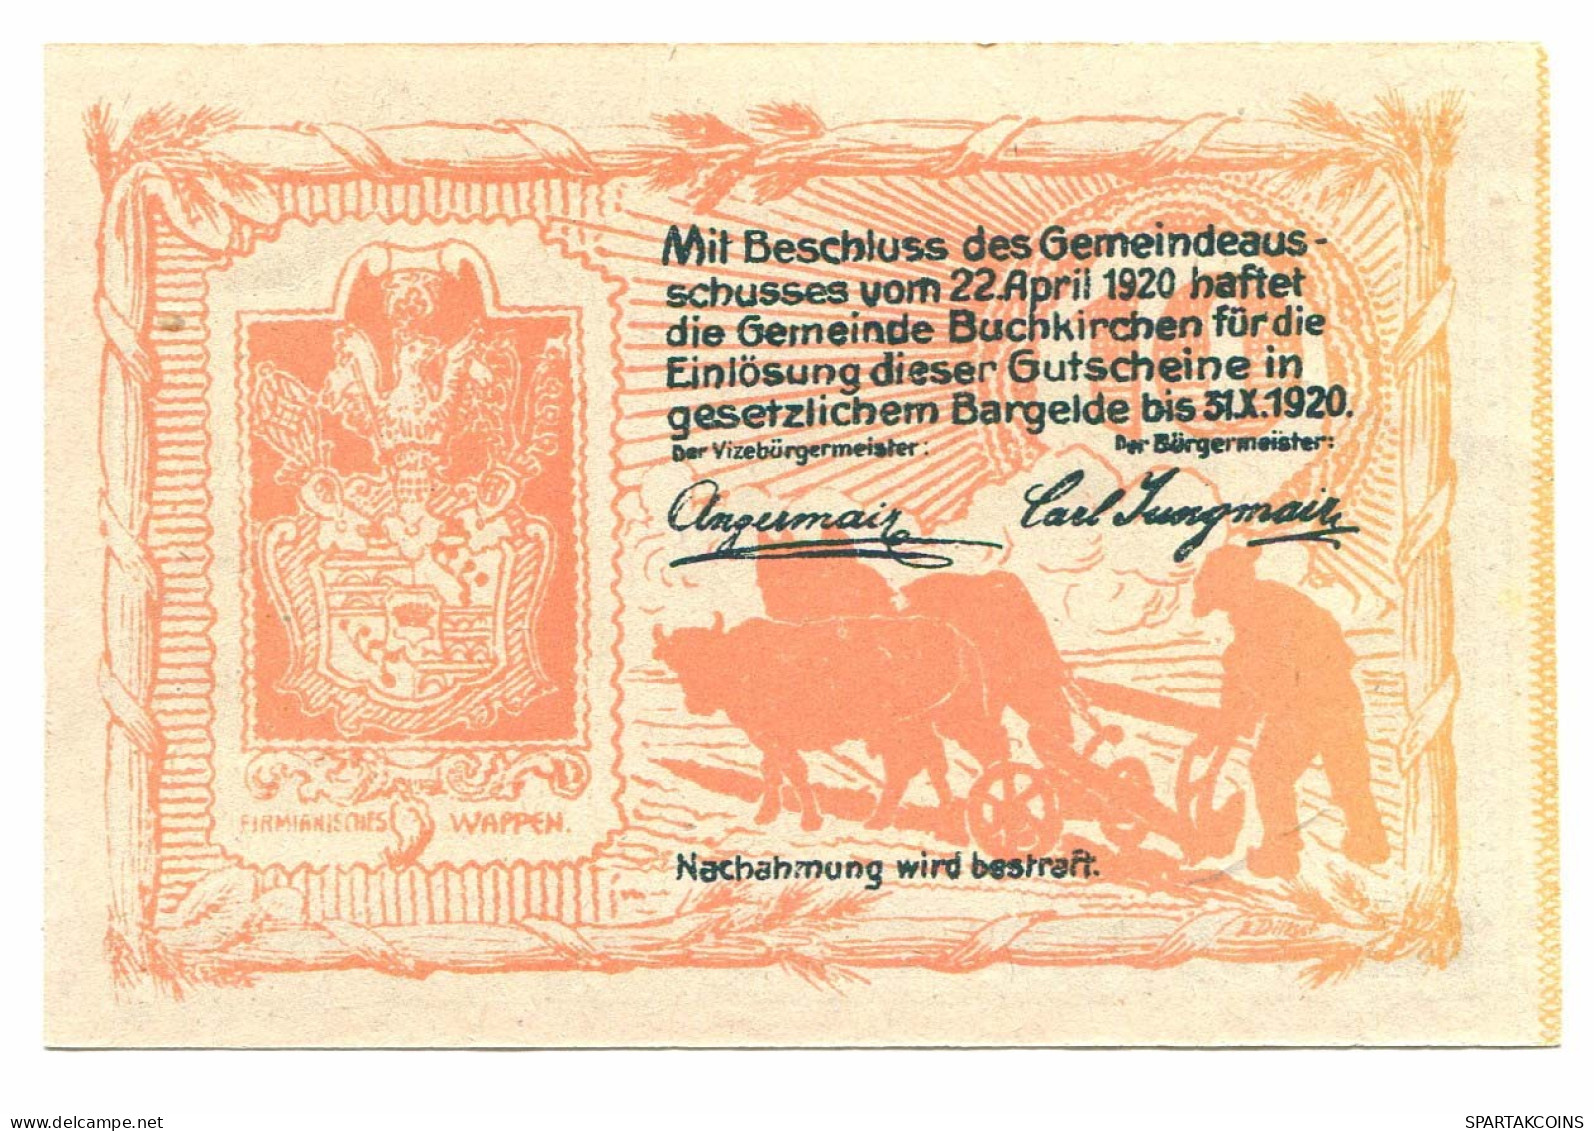 10 Heller 1920 BUCHKIRCHEN Österreich UNC Notgeld Papiergeld Banknote #P10531 - [11] Local Banknote Issues